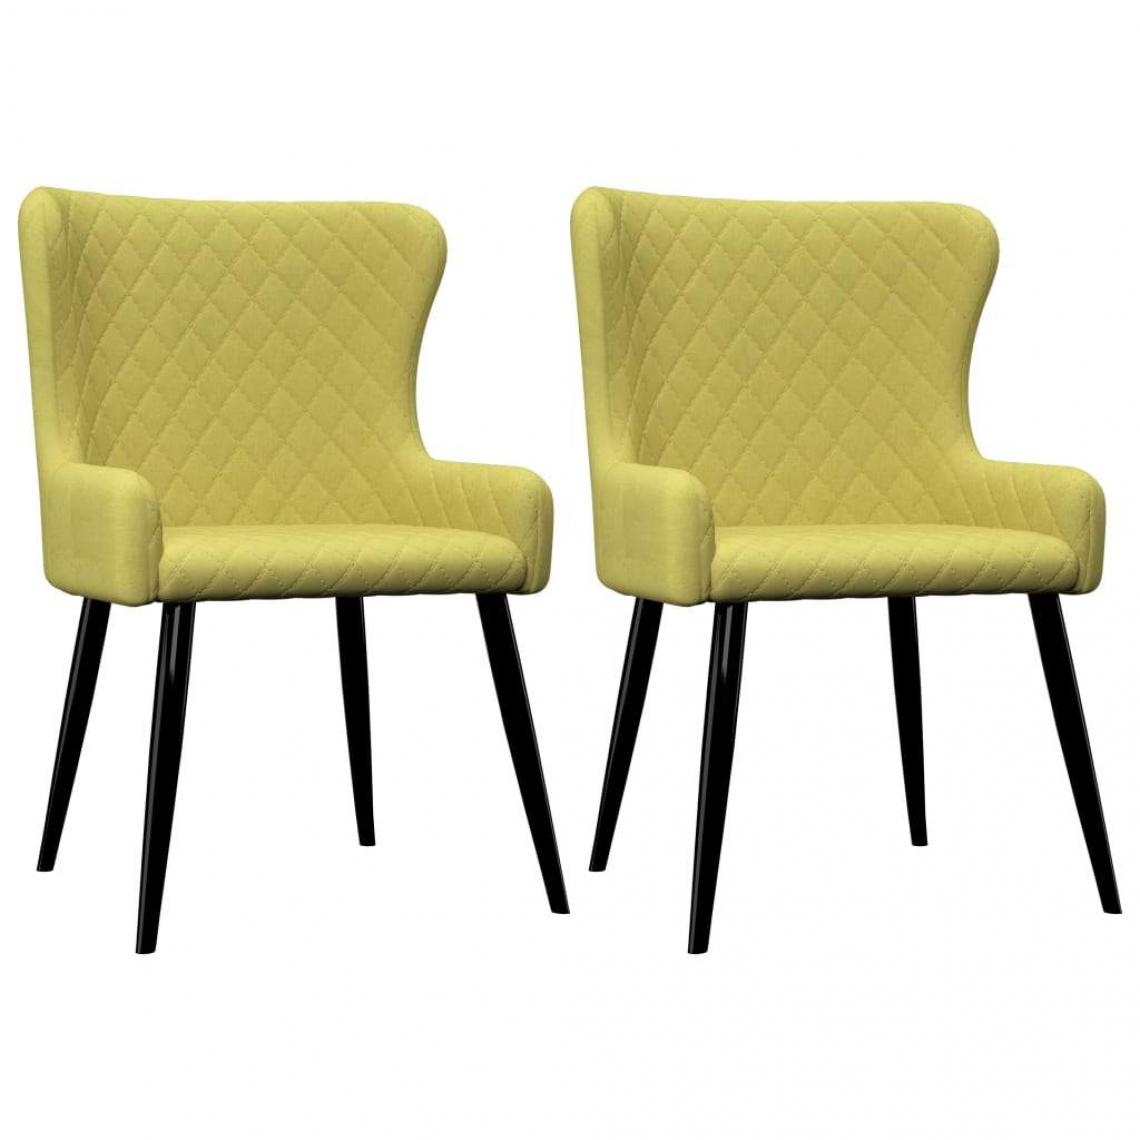 Decoshop26 - Lot de 2 chaises de salle à manger cuisine design moderne tissu vert CDS021117 - Chaises